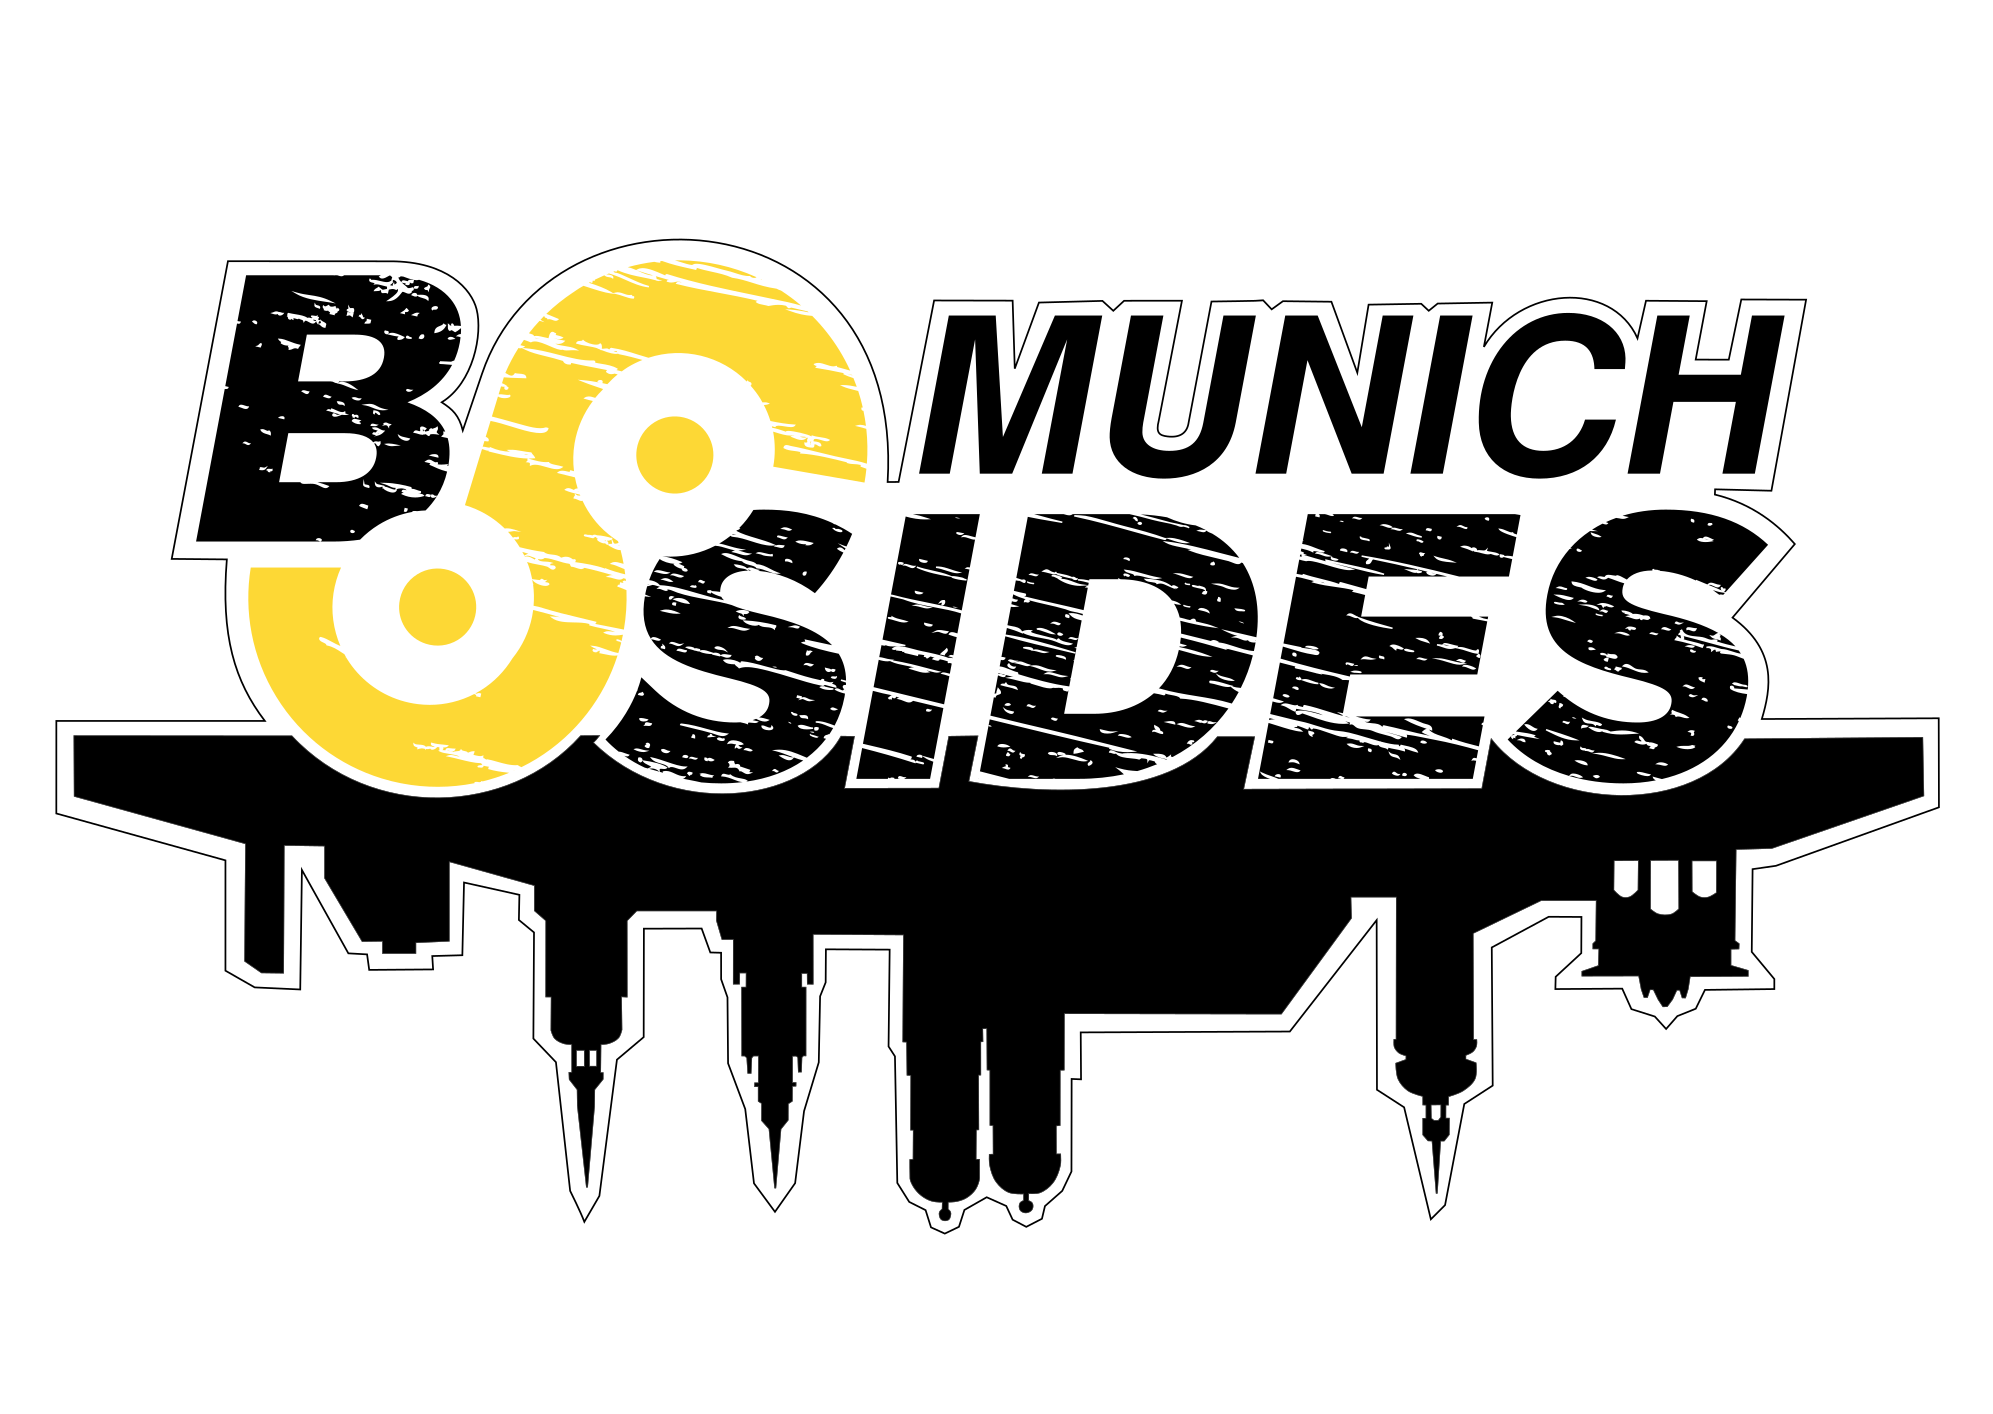 BSides Munich